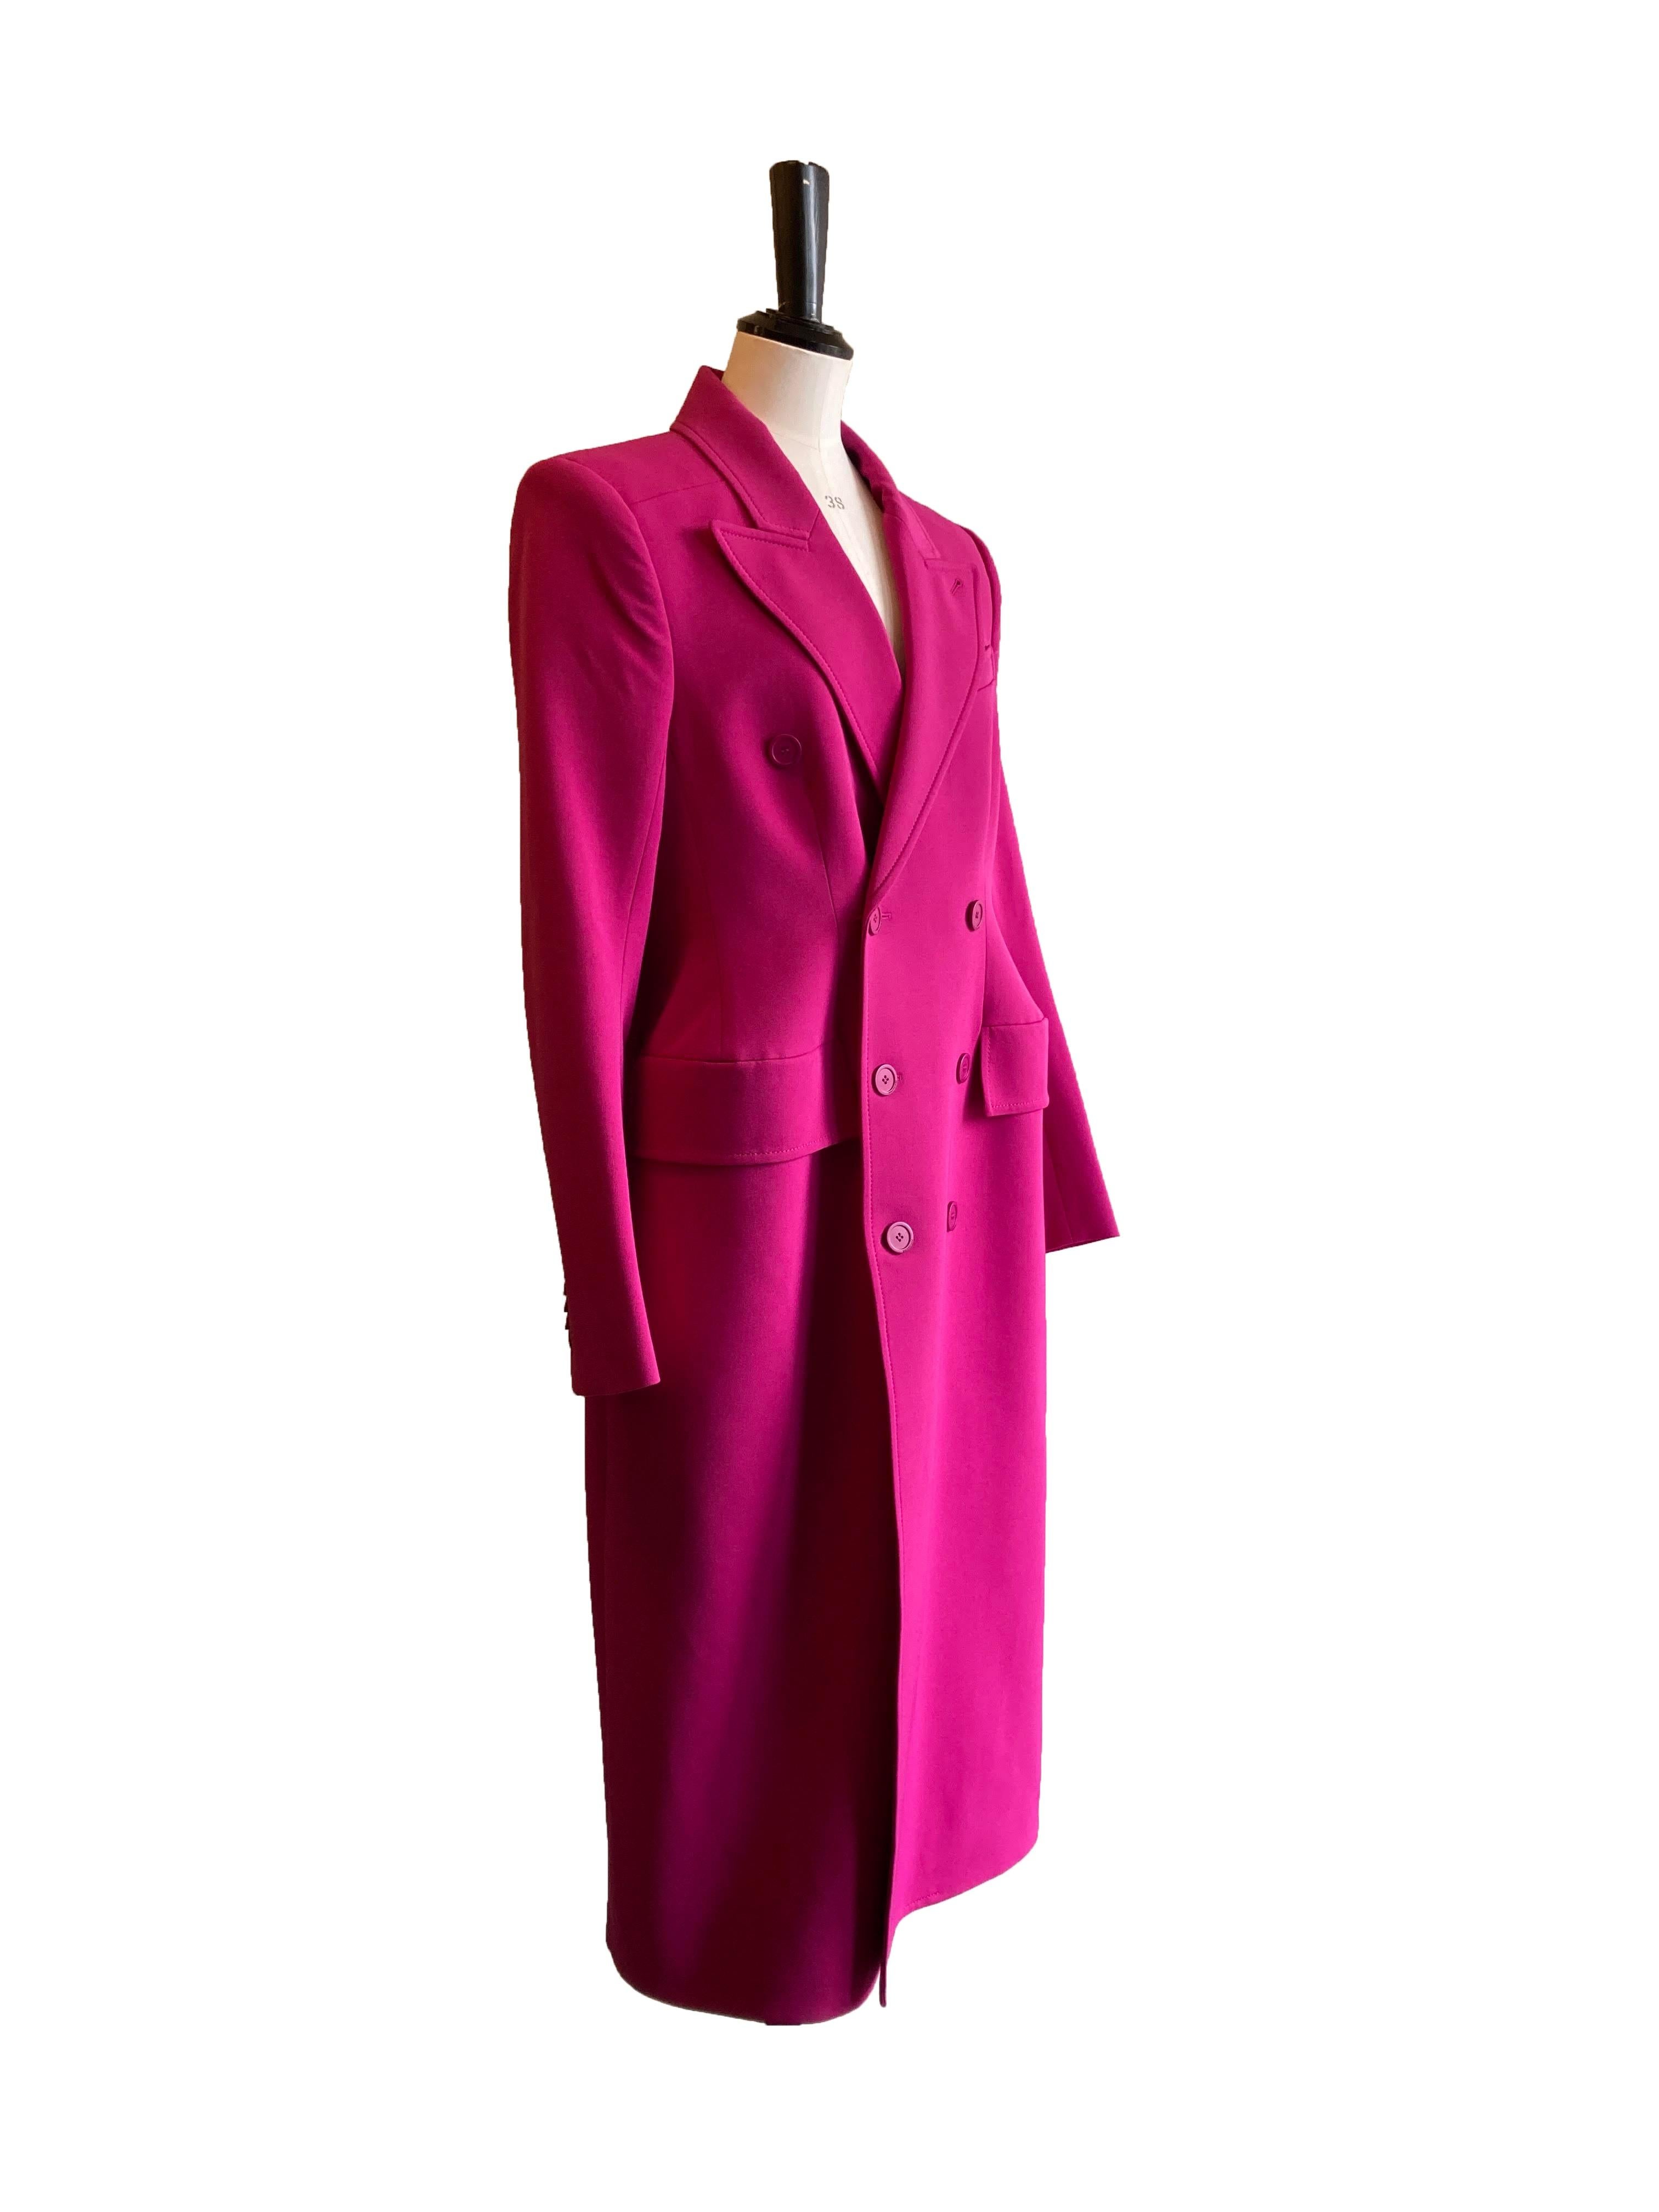 Manteau rose vif Hourglass de Balenciaga. De la Collection Sal en 2023.

Dessus en polyester et laine mélangés rose vif, silhouette signée Balenciaga avec hanches soulignées, taille cintrée et épaules fortes pour créer une silhouette en sablier.